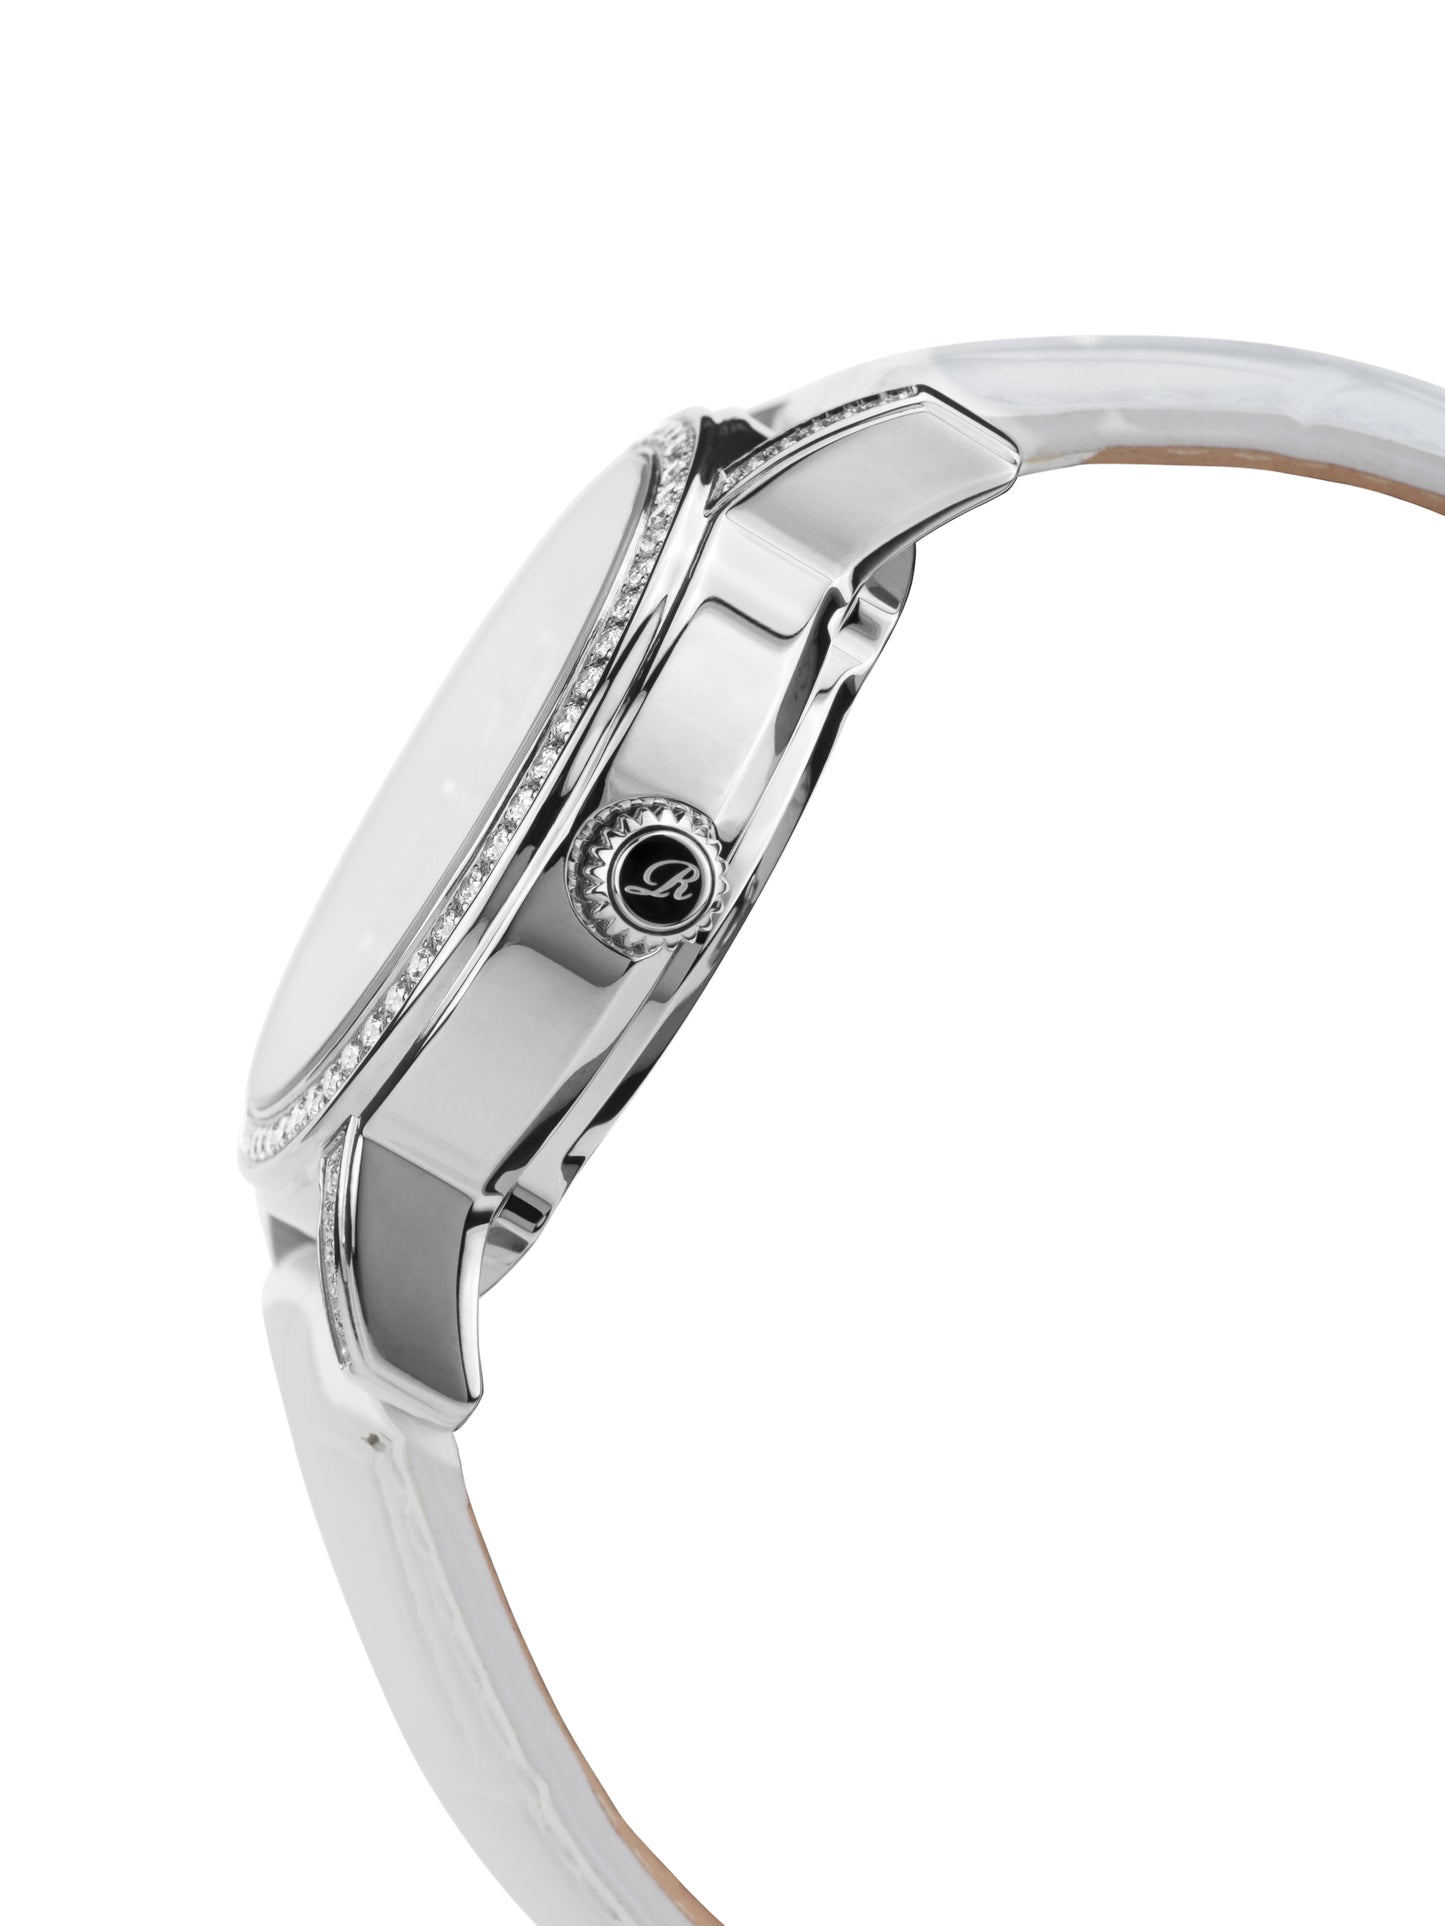 Automatic watches — Dorothea — Richtenburg — steel silver white